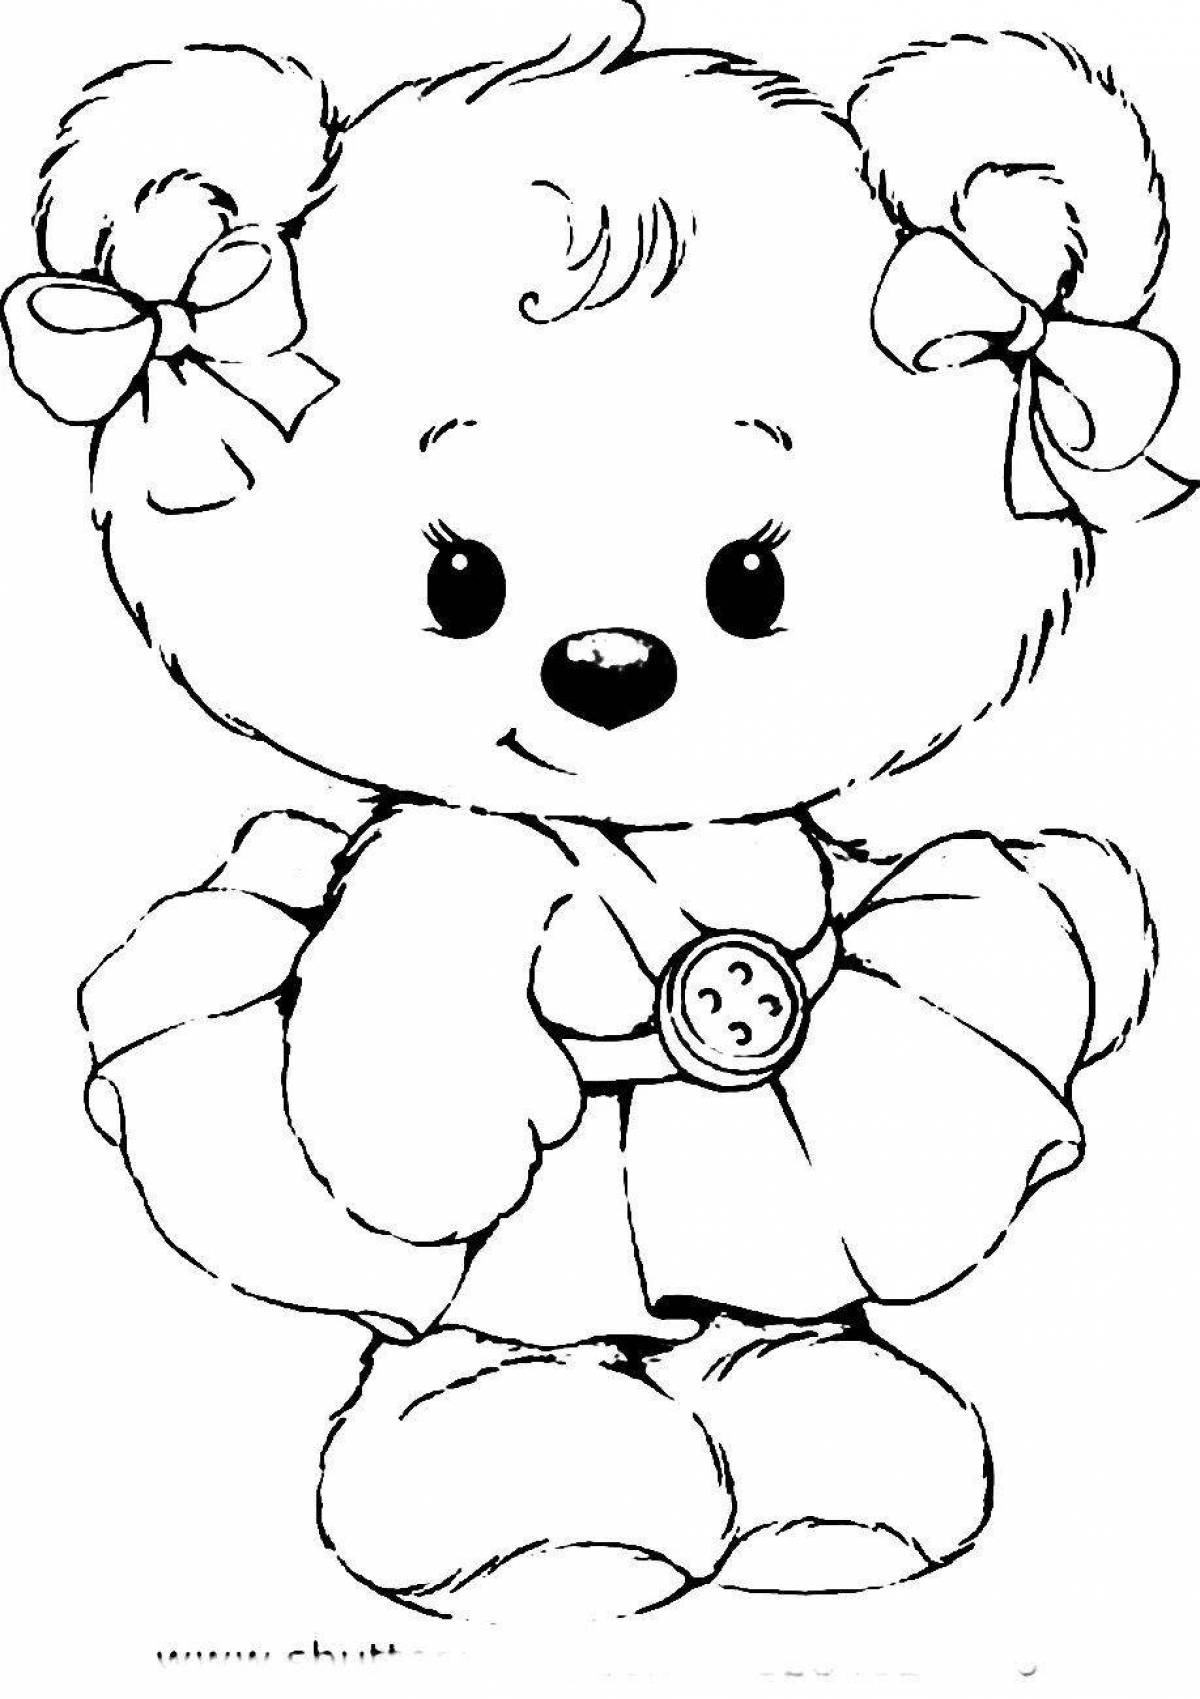 Teddy bear cute coloring book